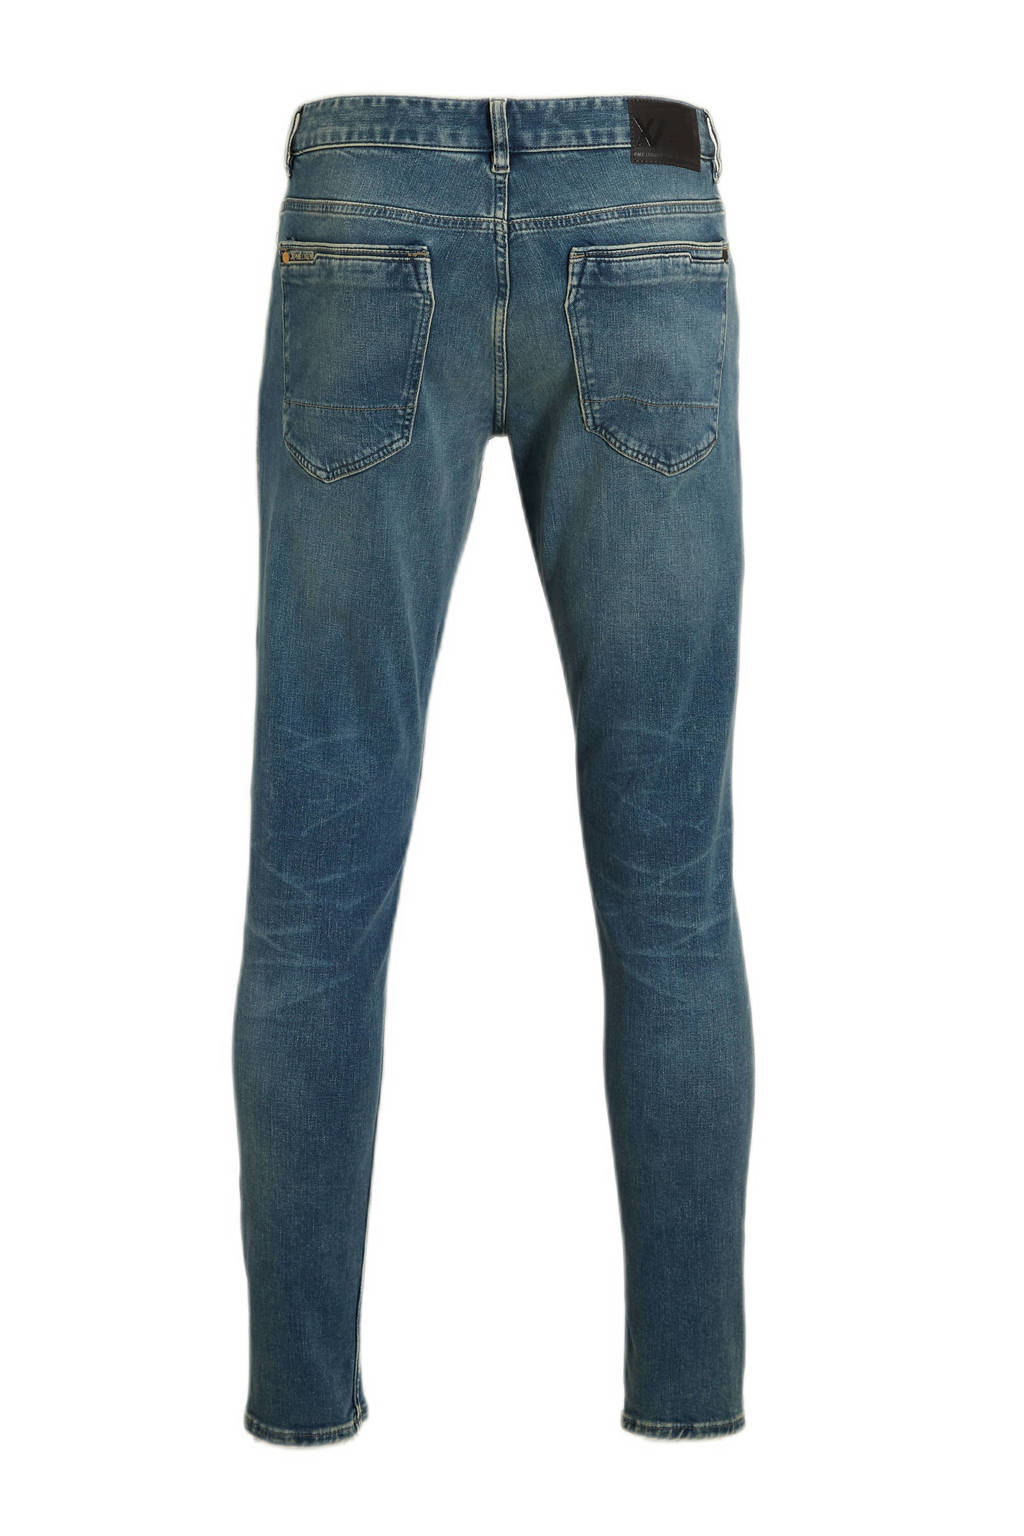 PME jeans | fit Union wash slim River dirt XV Legend sky